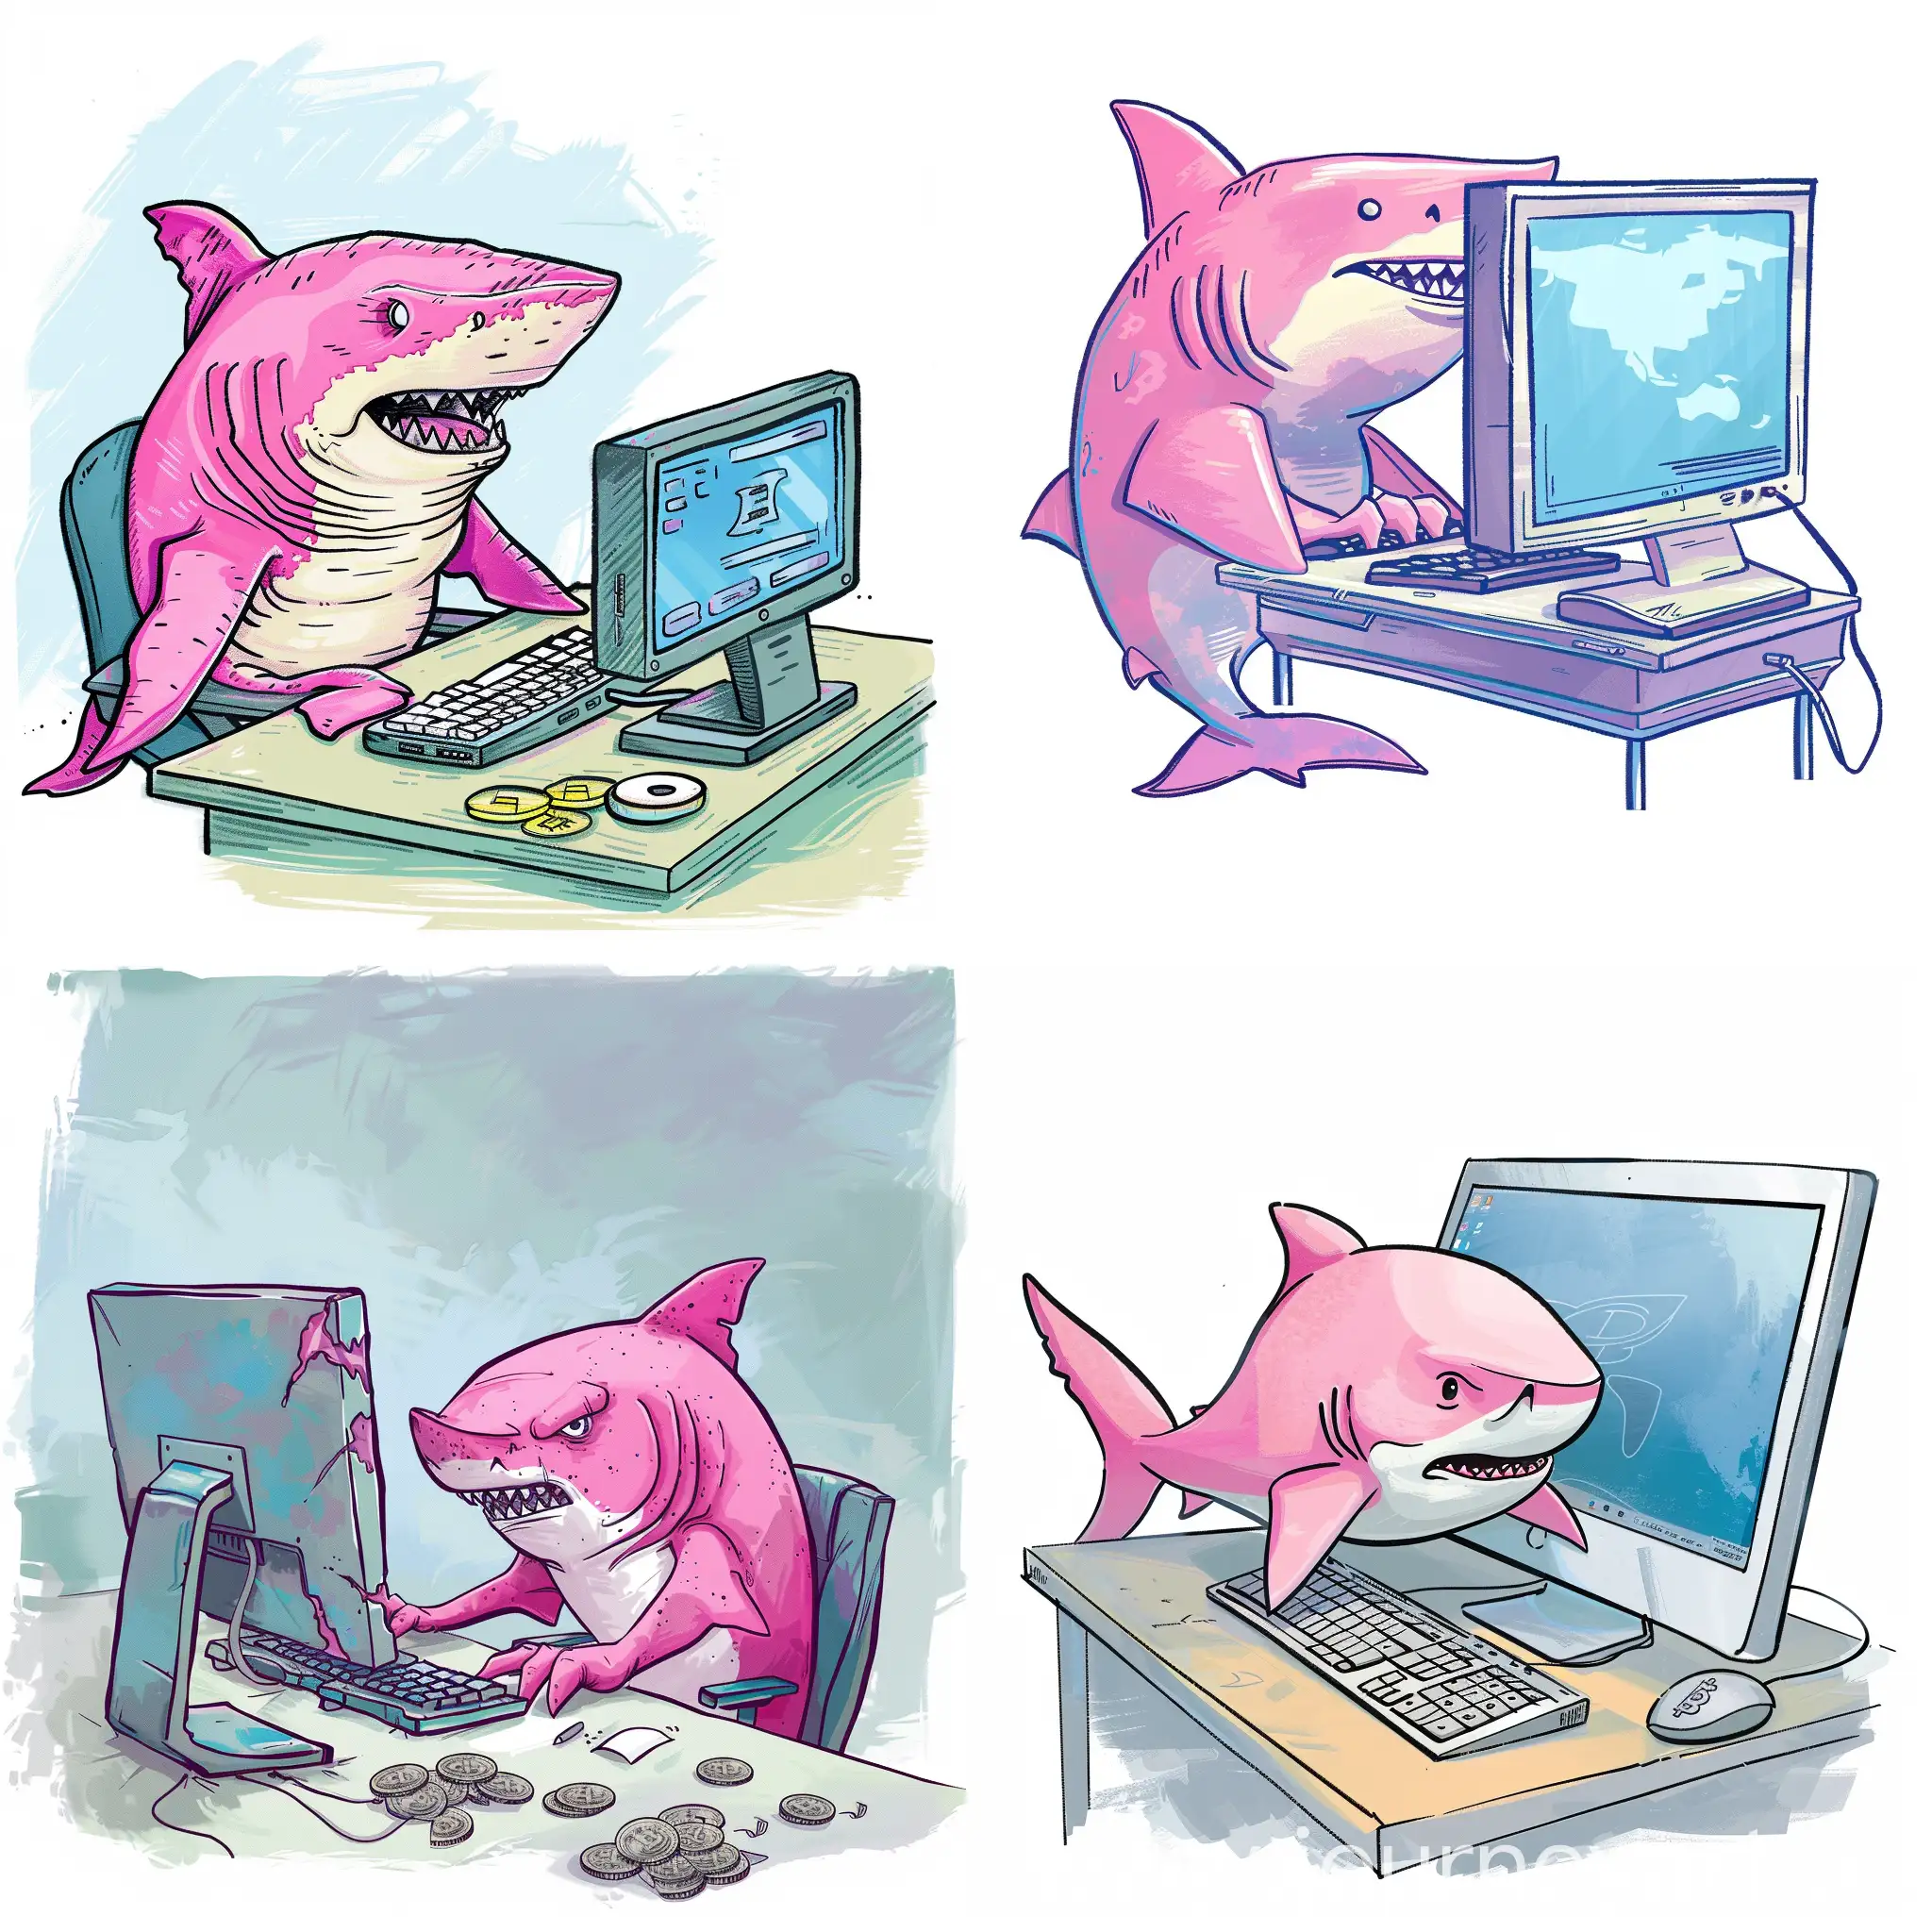 Розовая акула сидит за компьютером и занимается криптовалютой